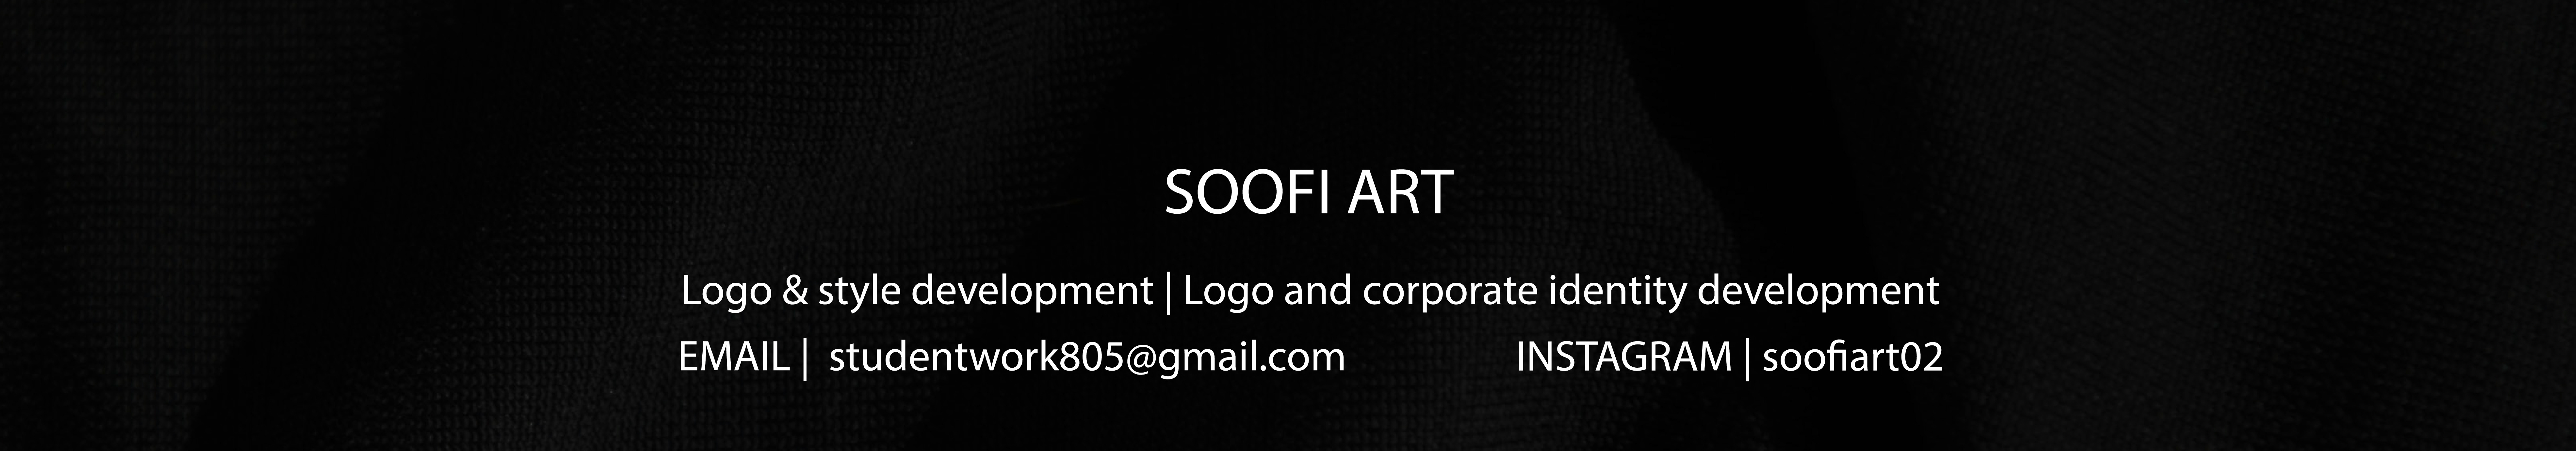 Banner de perfil de Soofi Art